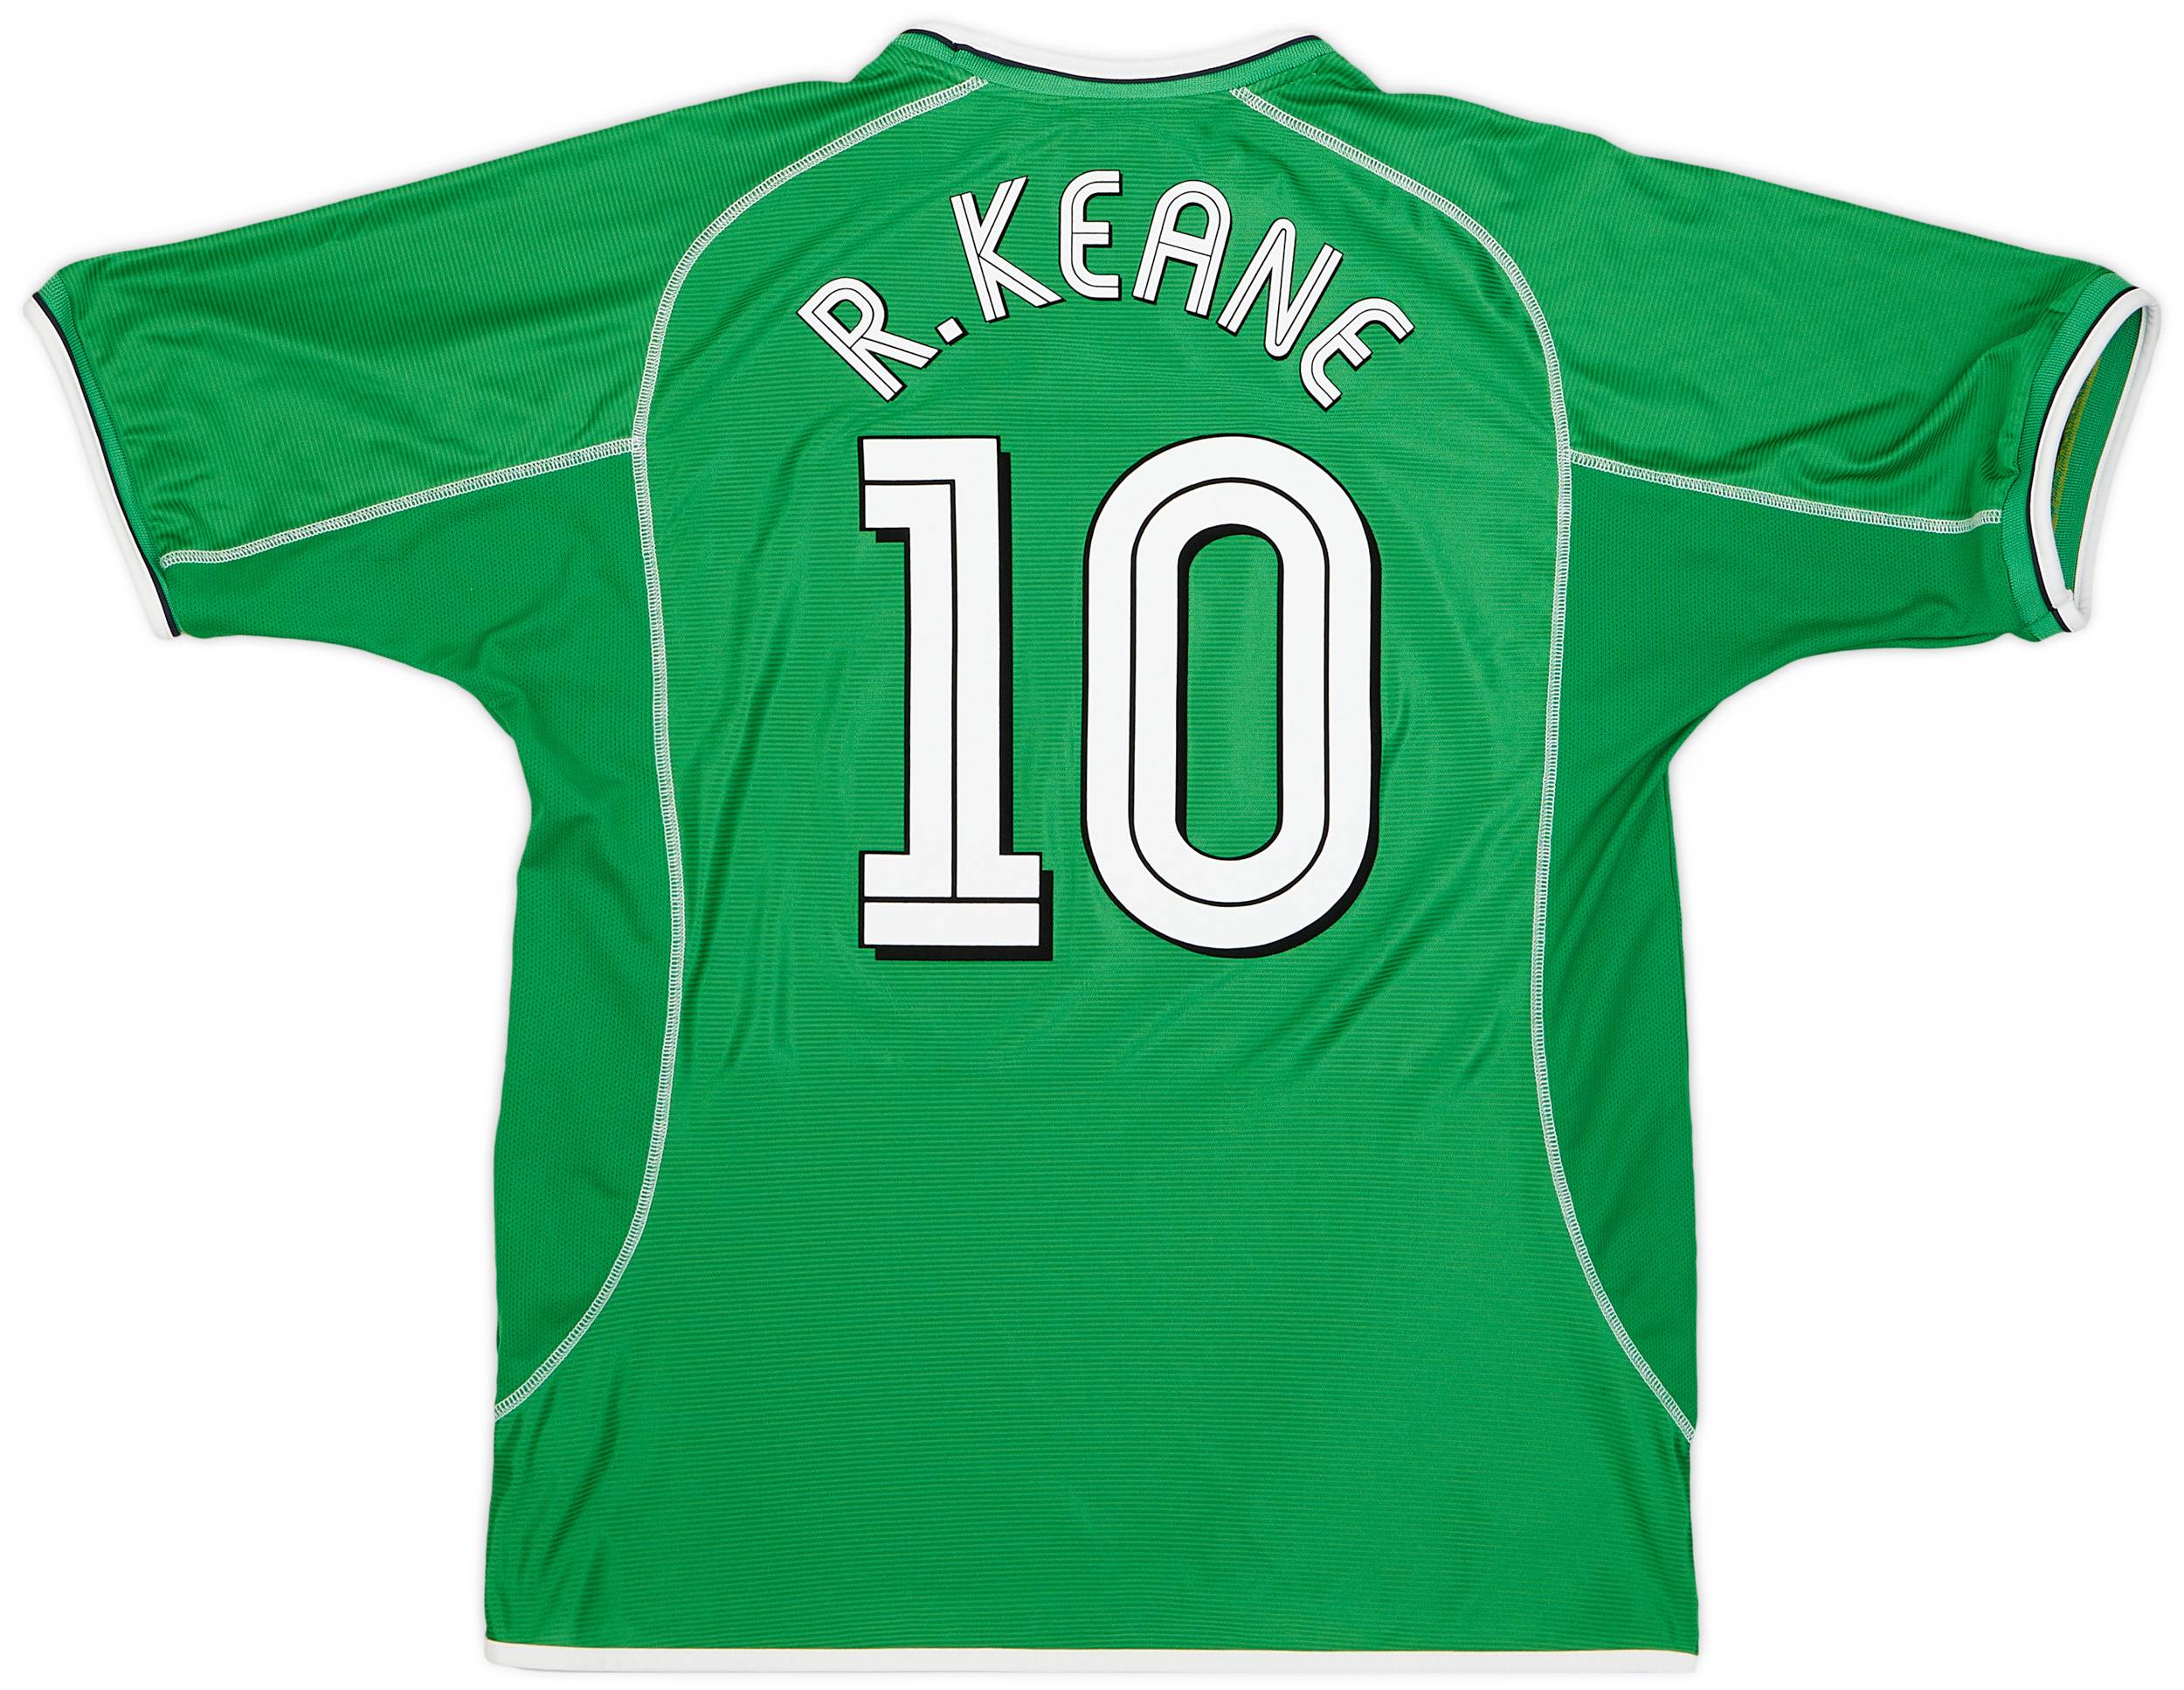 2001-03 Ireland Home Shirt R.Keane #10 - 9/10 - (XL)